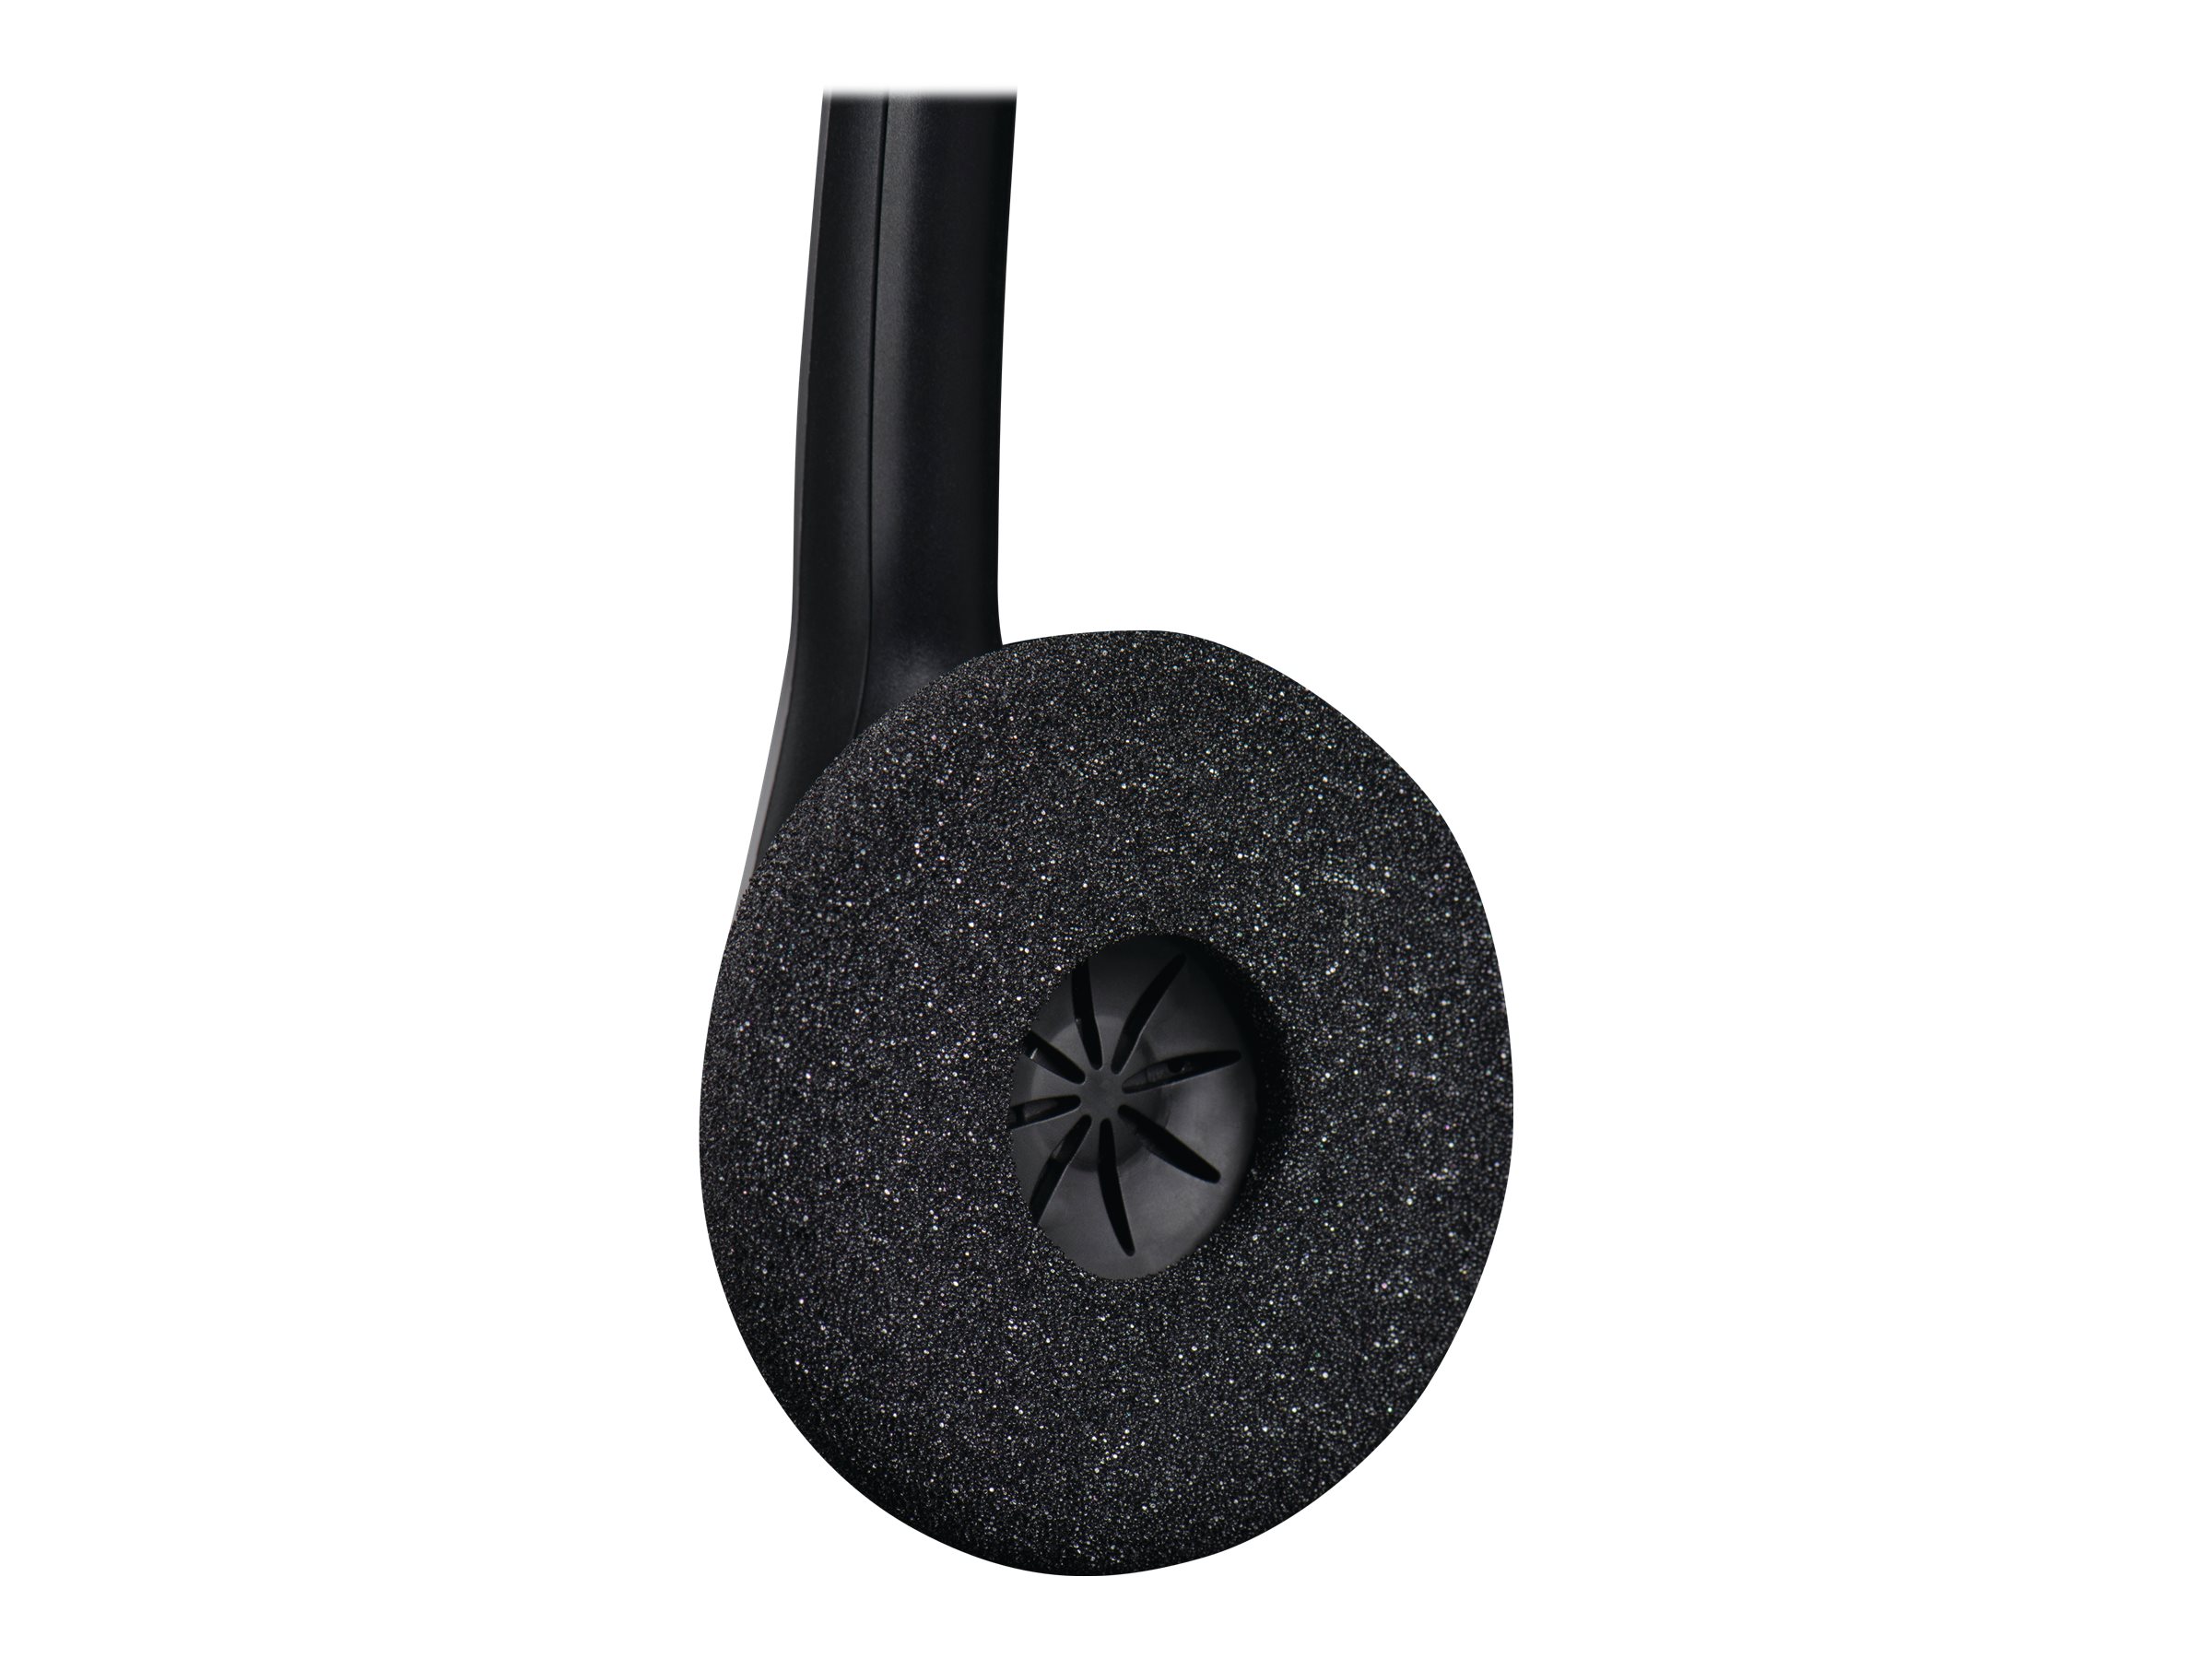 Jabra BIZ 1500 Mono - Micro-casque - sur-oreille - filaire - USB - 1553-0159 - Écouteurs